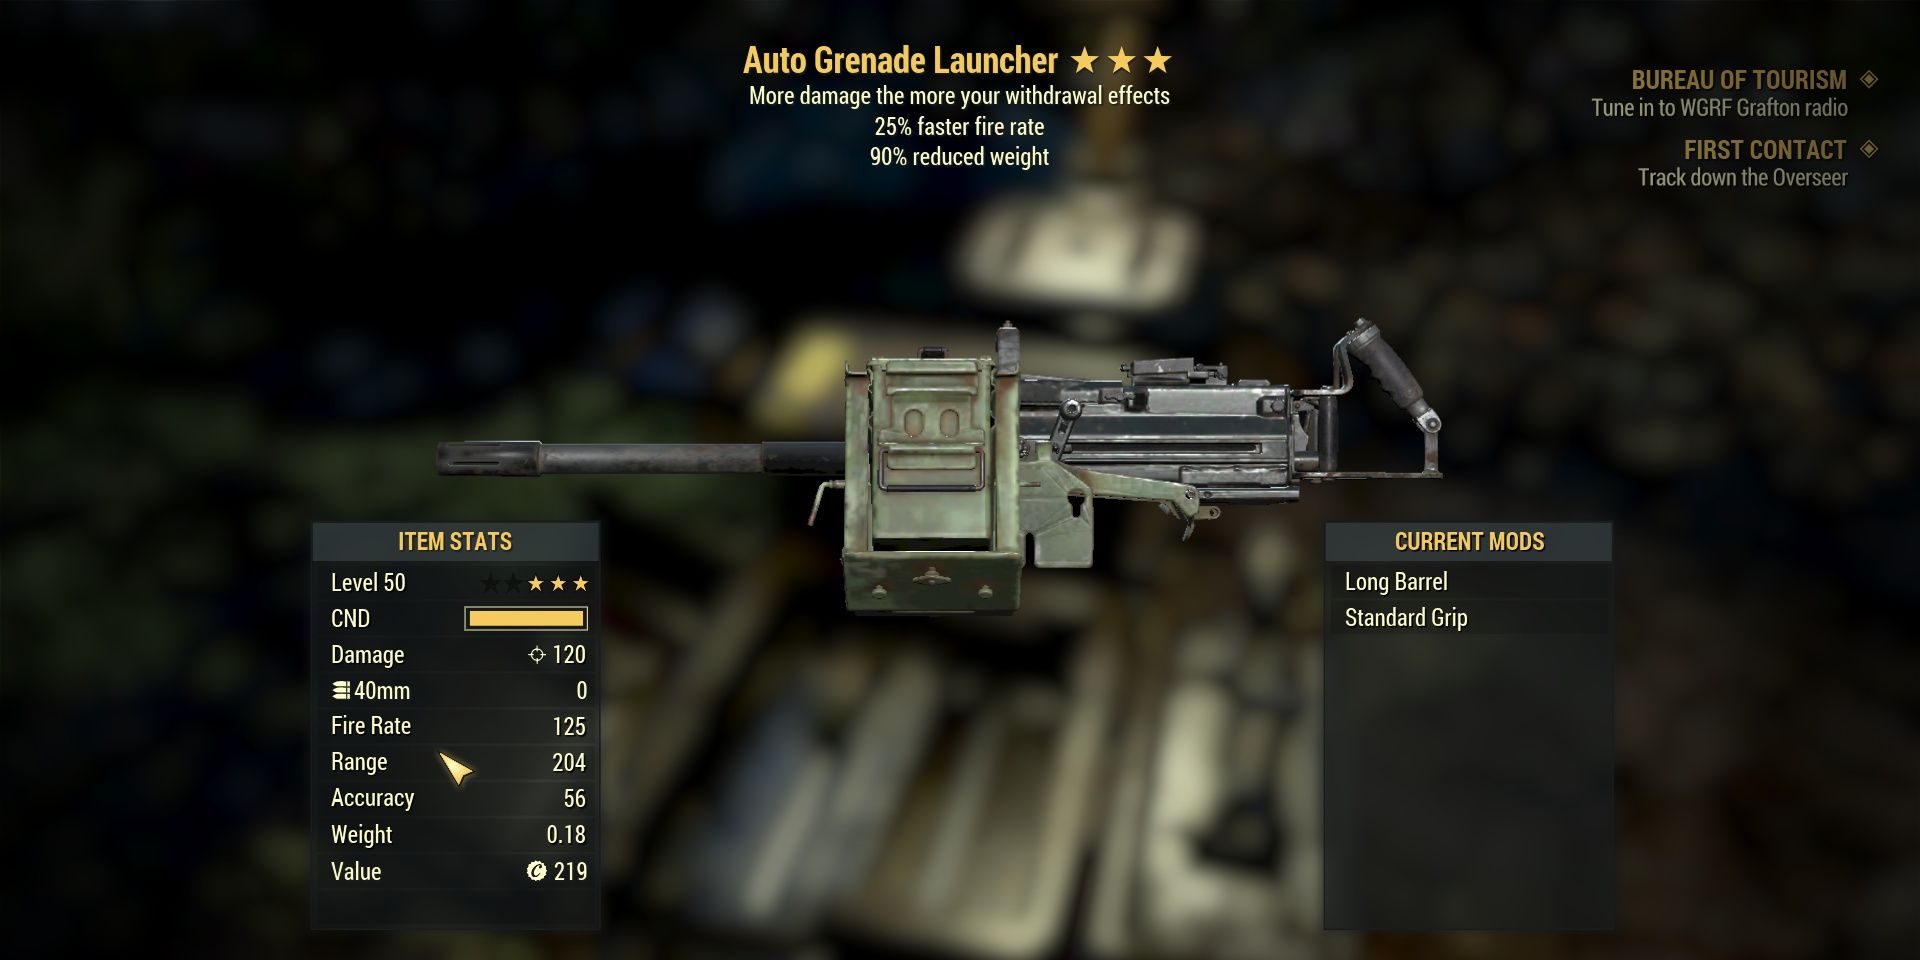 Auto Grenade Launcher In Fallout 76 